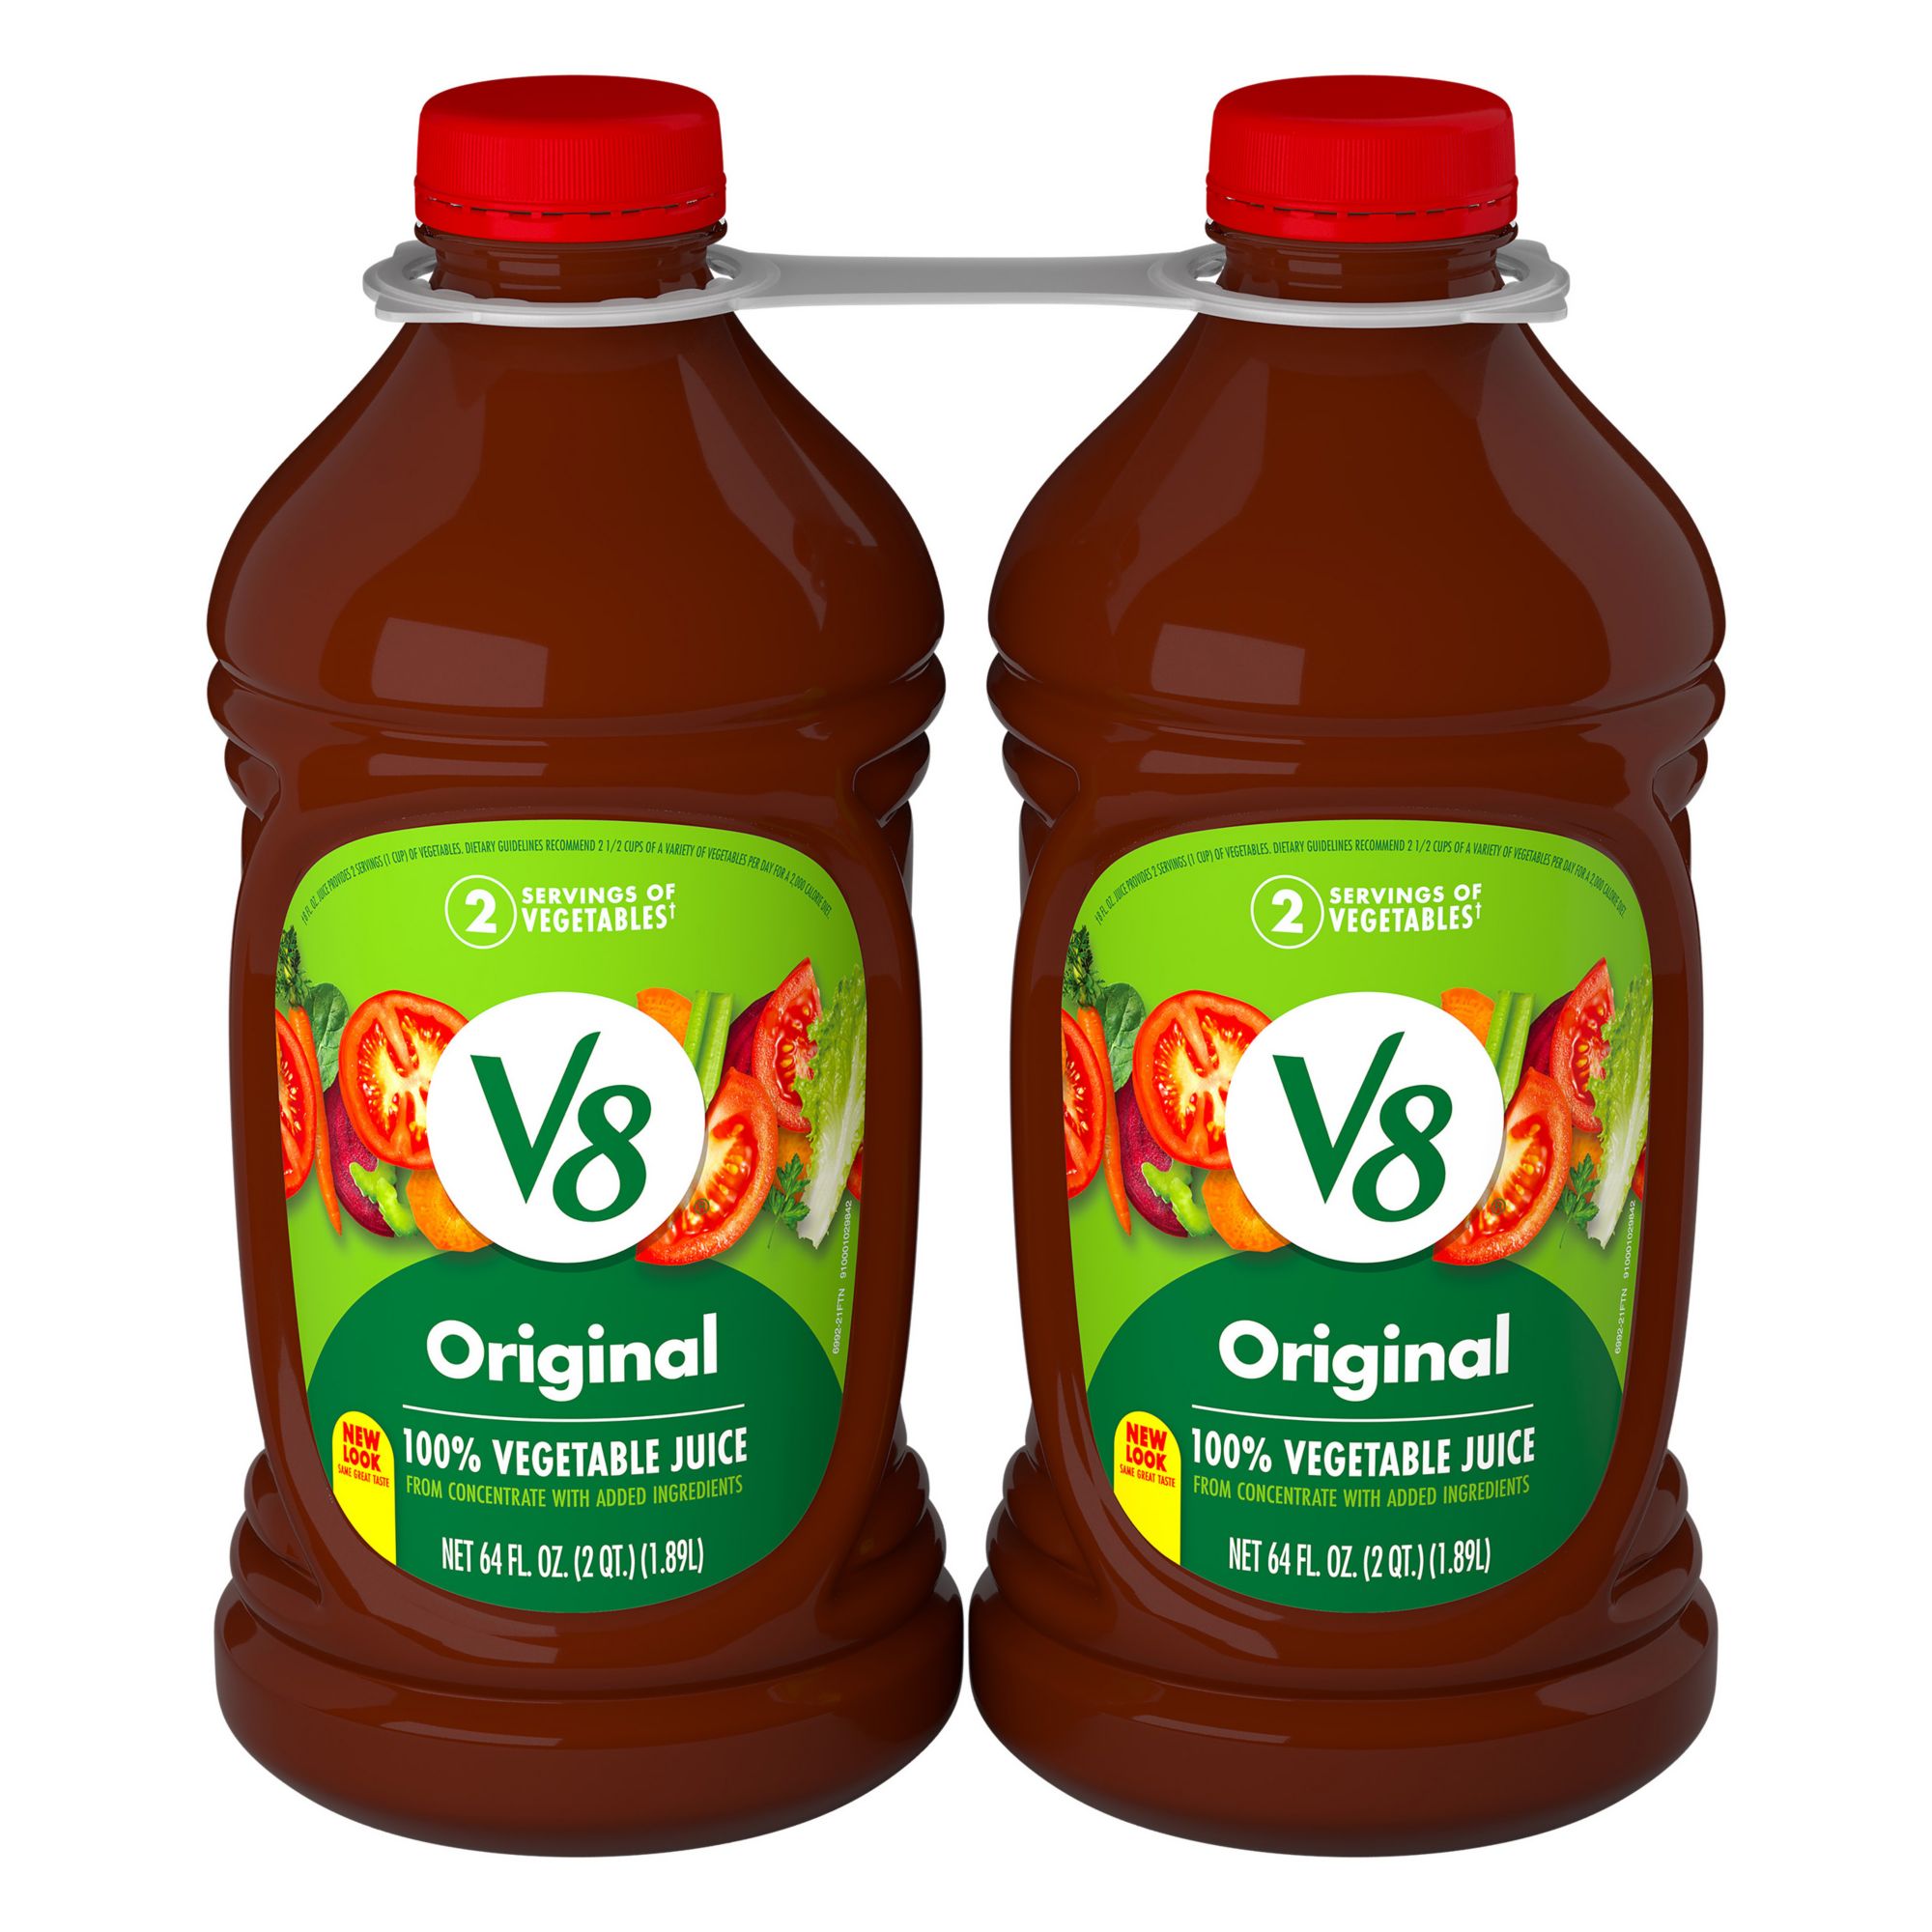 Wholesale Juice Bar Supplies: Food & Drink Packaging